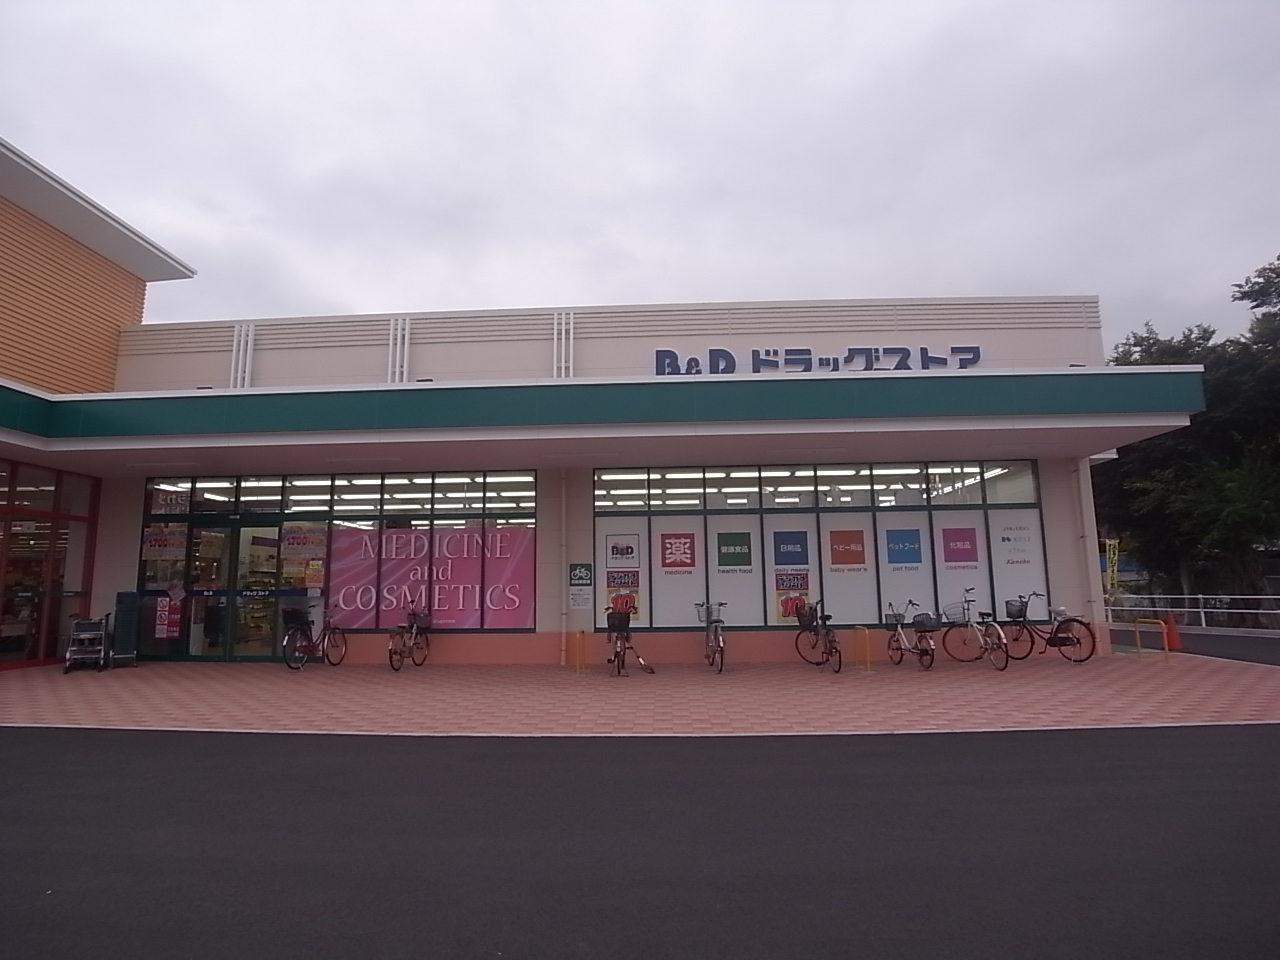 Dorakkusutoa. Bea ・ and ・ Dee drugstore Heiwado Hosei shop 640m until (drugstore)